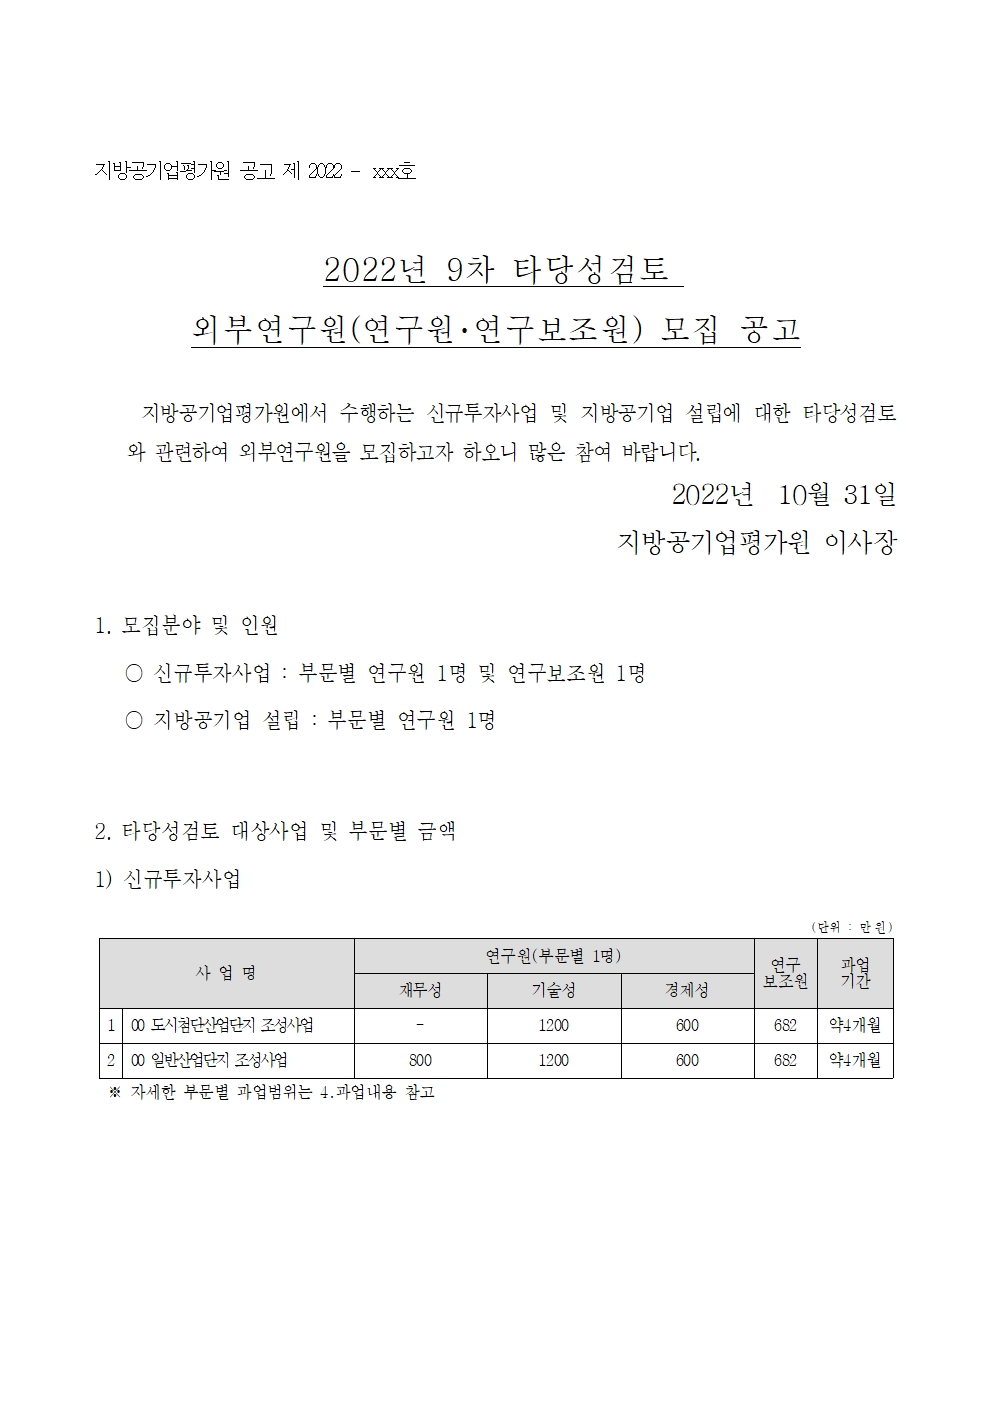 22-9차(10월) 외부연구원 모집 공고_최종001.jpg